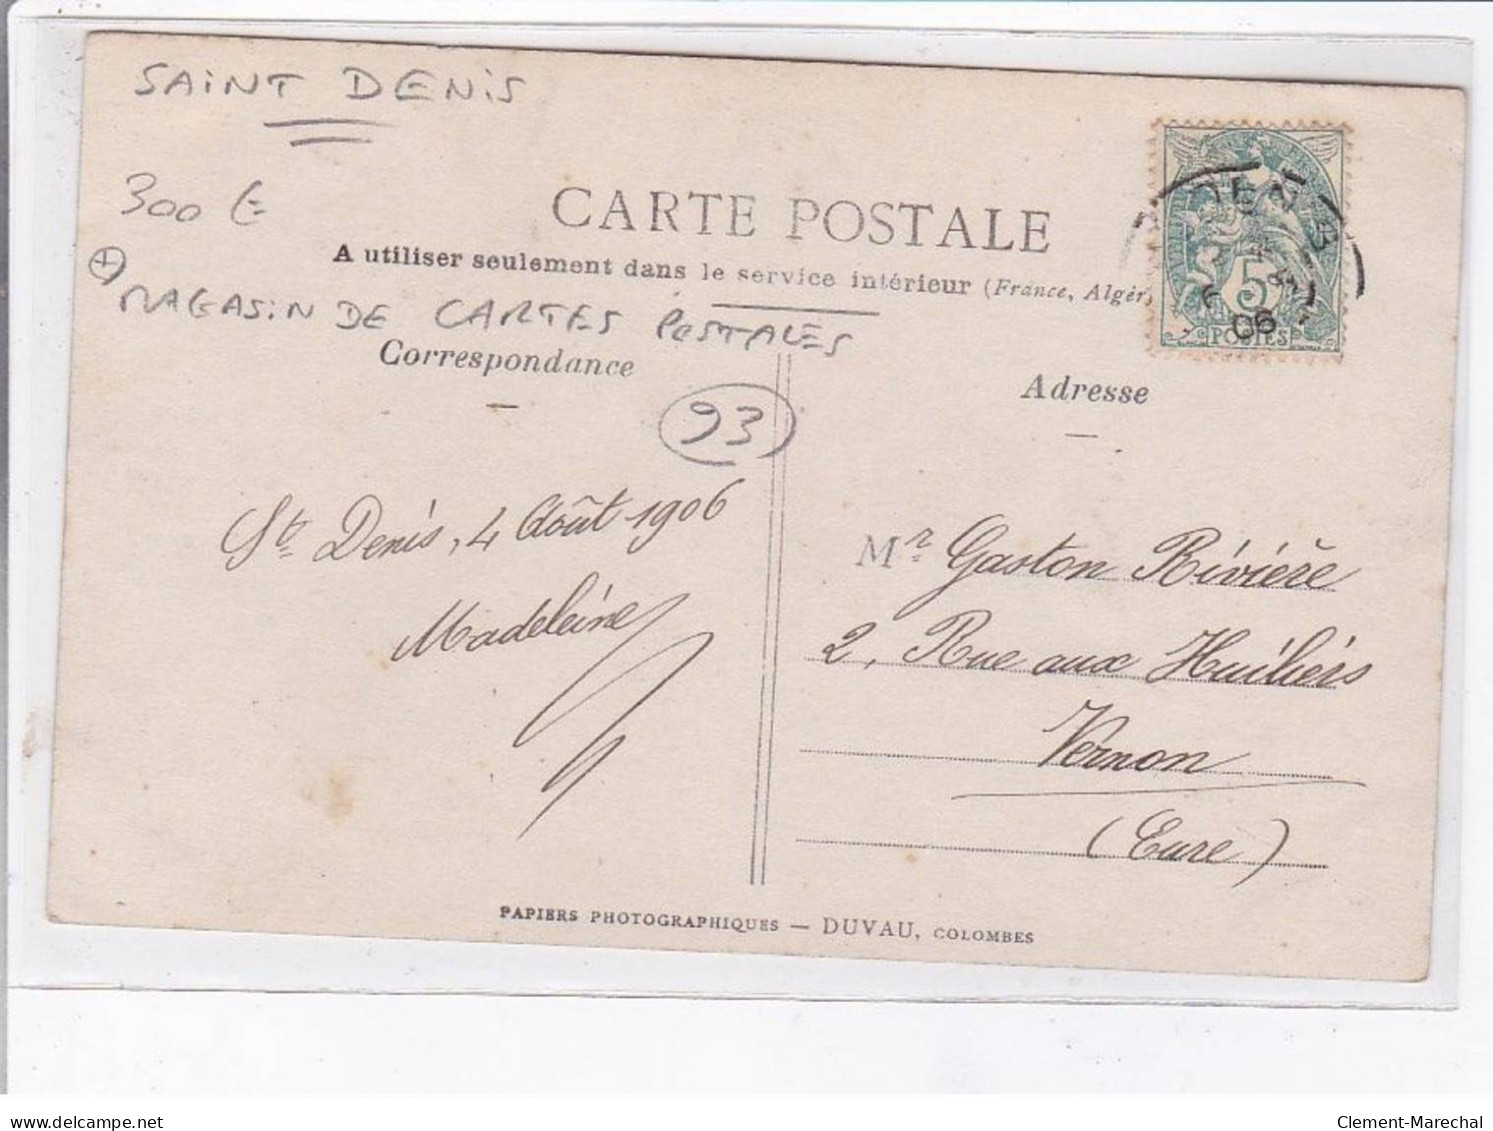 SAINT-DENIS: Magasin De Cartes Postales, Librairie Ridréau - Très Bon état - Saint Denis